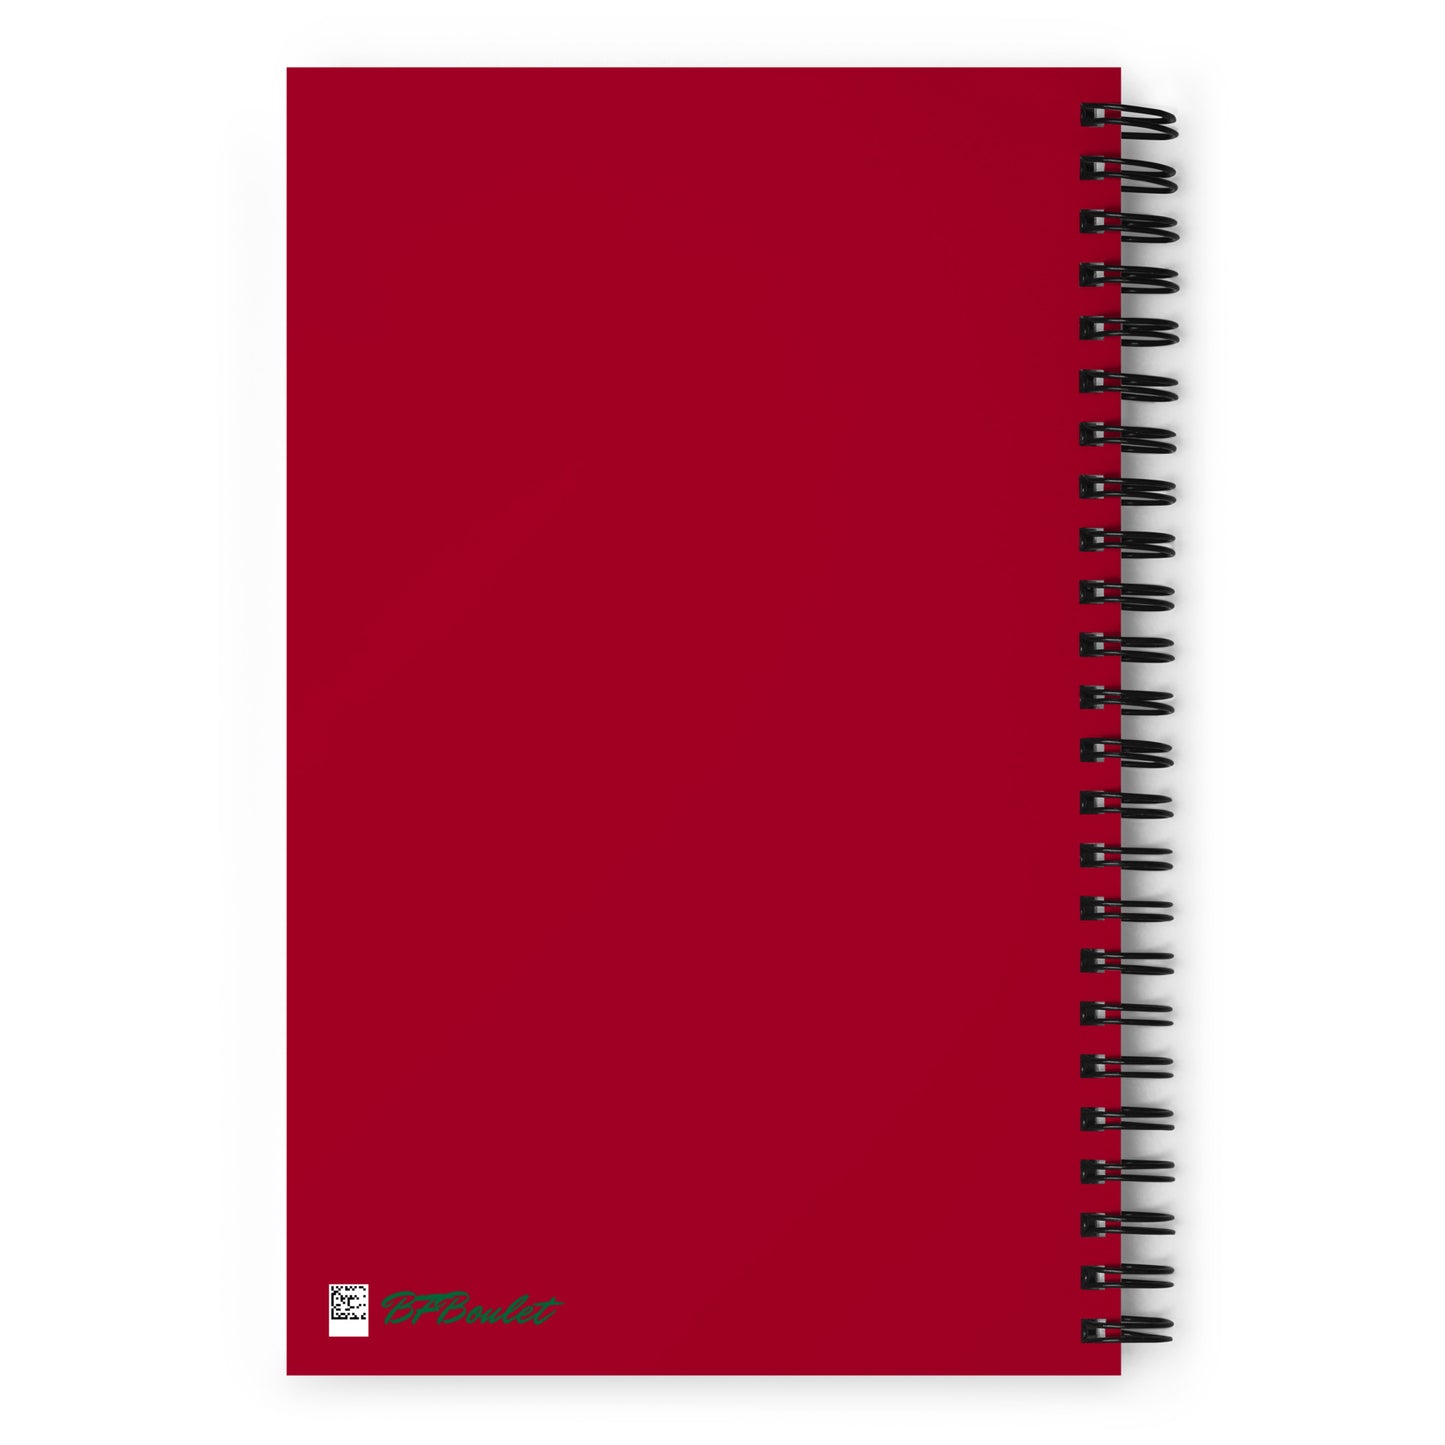 Maroon Spiral Notebook